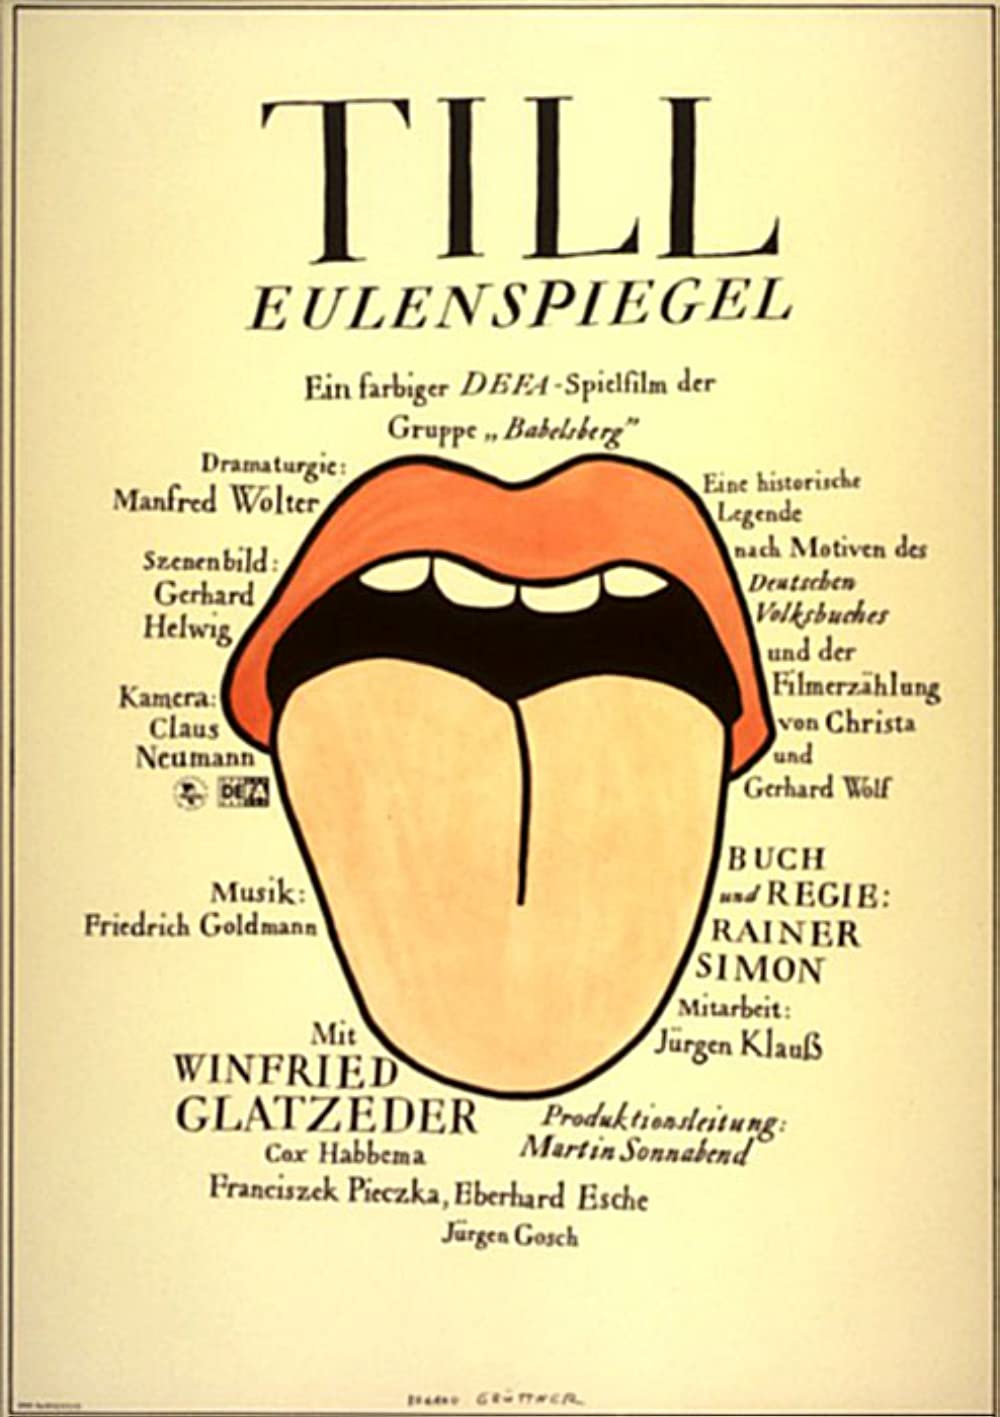 Filmbeschreibung zu Till Eulenspiegel (1974)